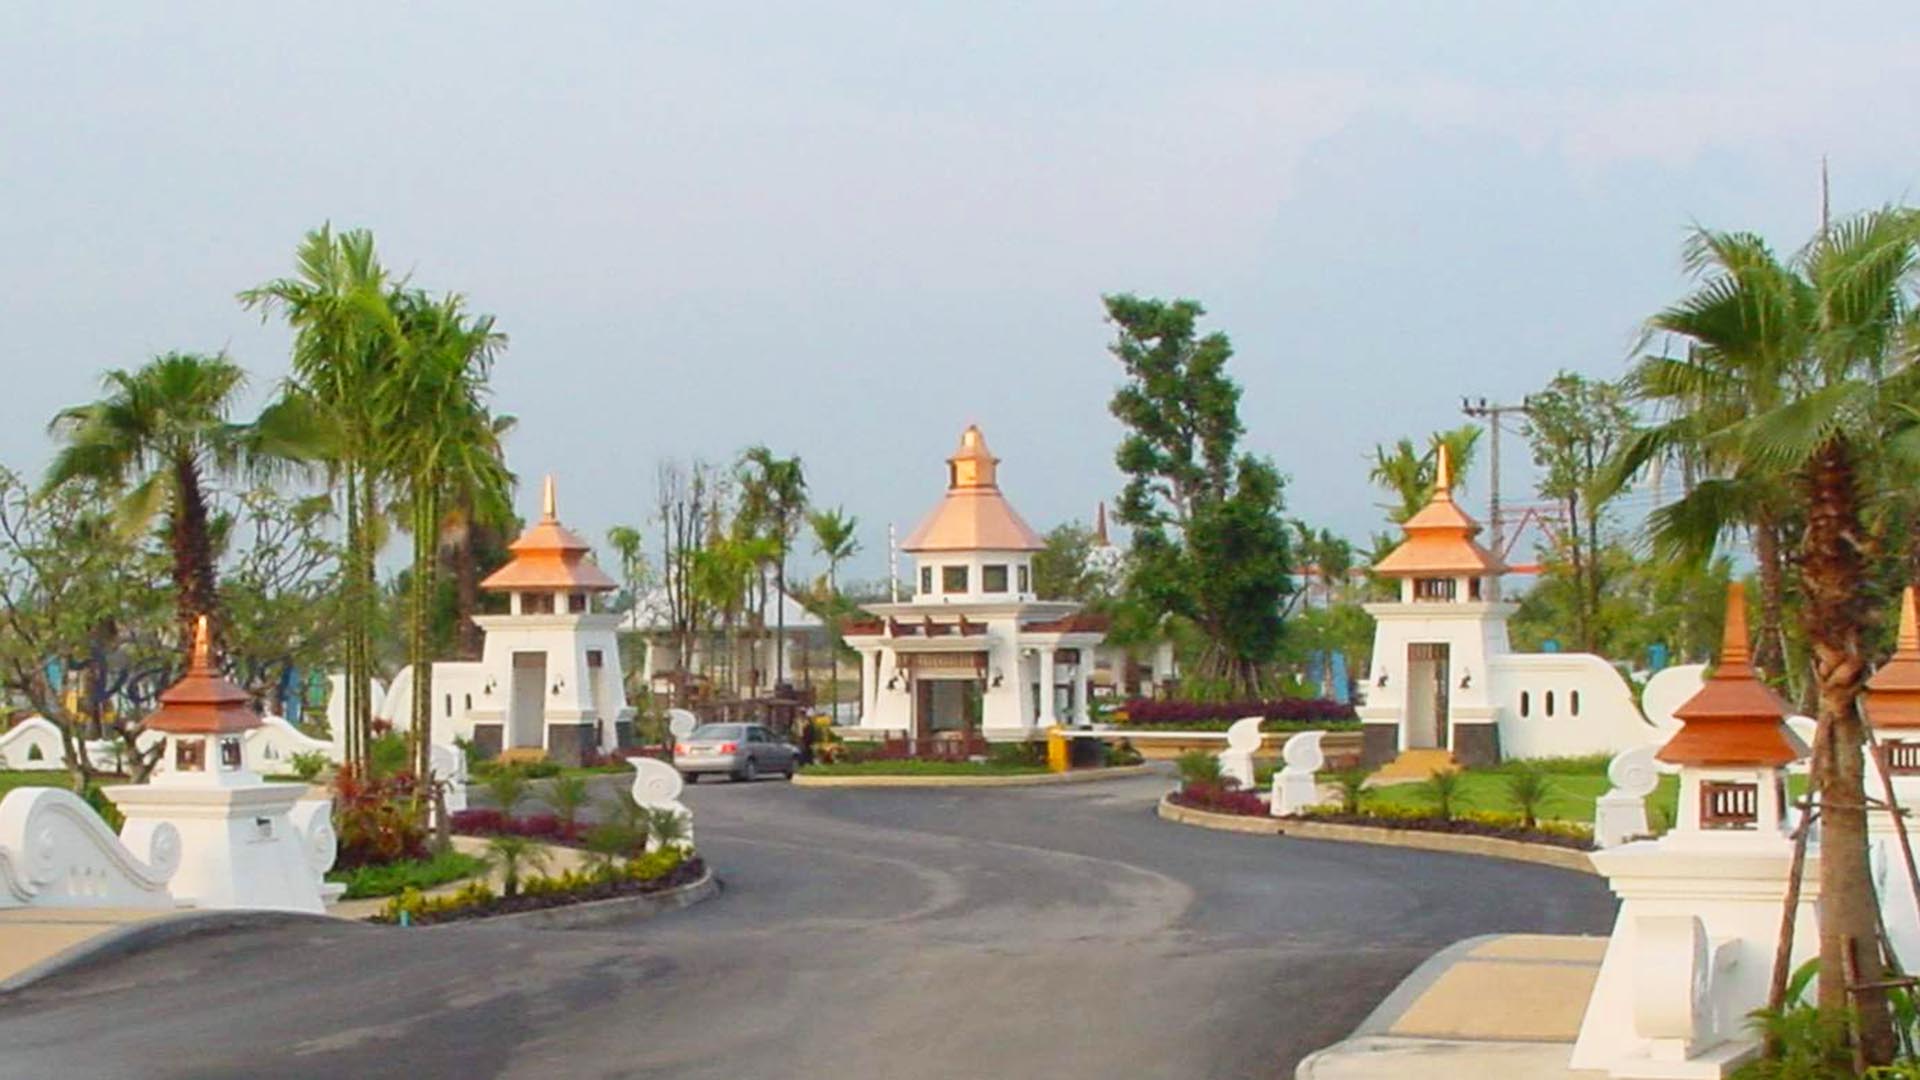 ชลลดา แลนด์ แอนด์ เฮ้าส์ พาร์ค เชียงใหม่ (Chollada Land and House Park Chiangmai) : ภาพที่ 1